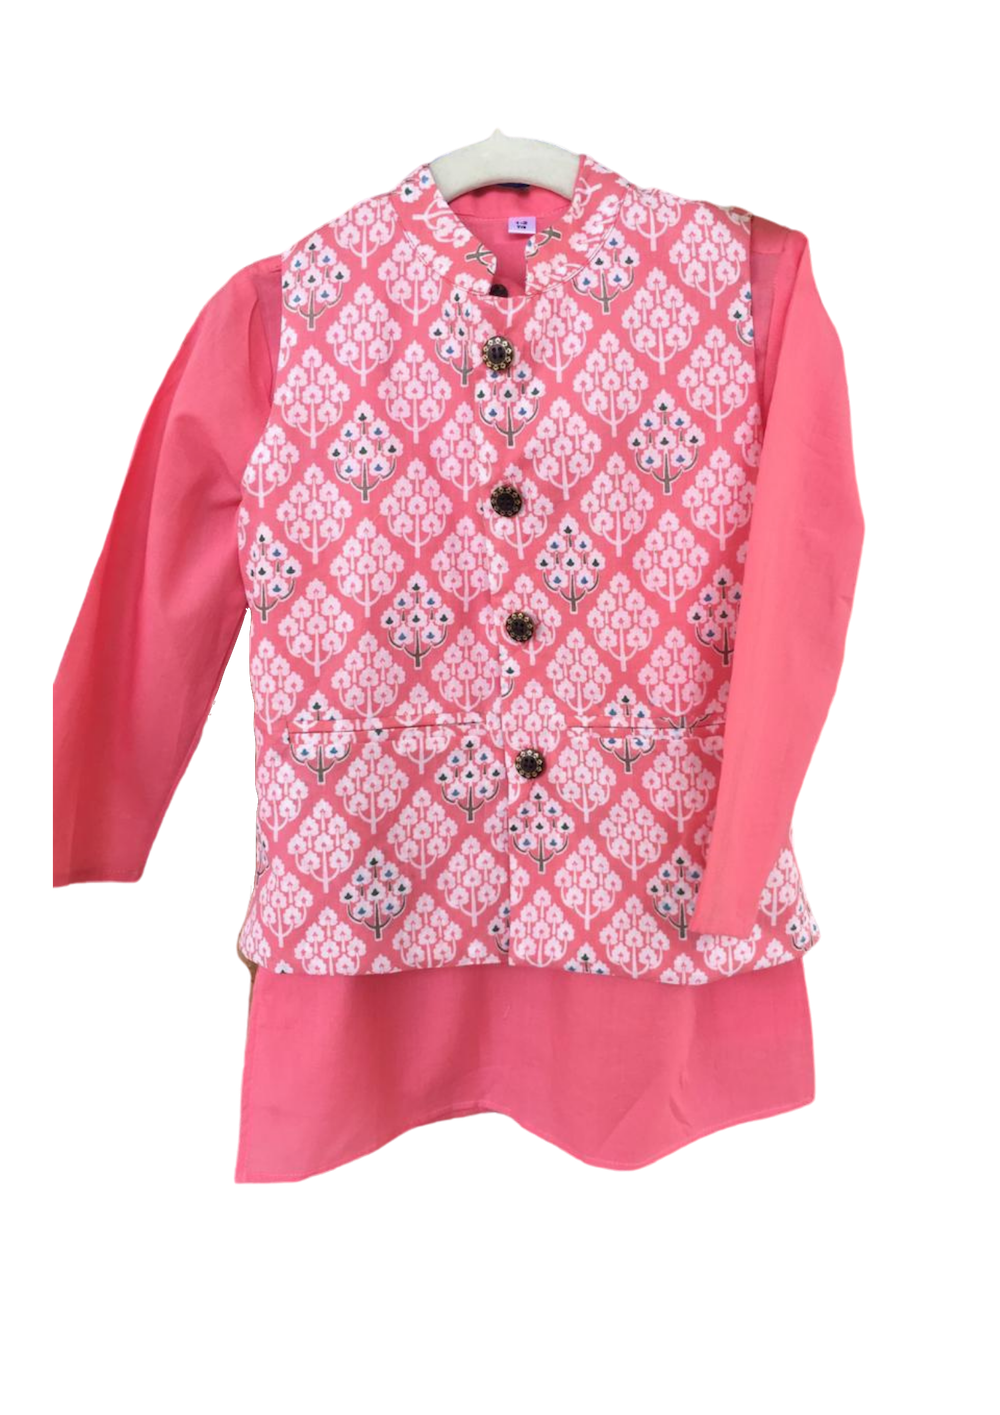 [Available] Boys Pink Kurta Jacket Top [Size: 7-8 yrs]